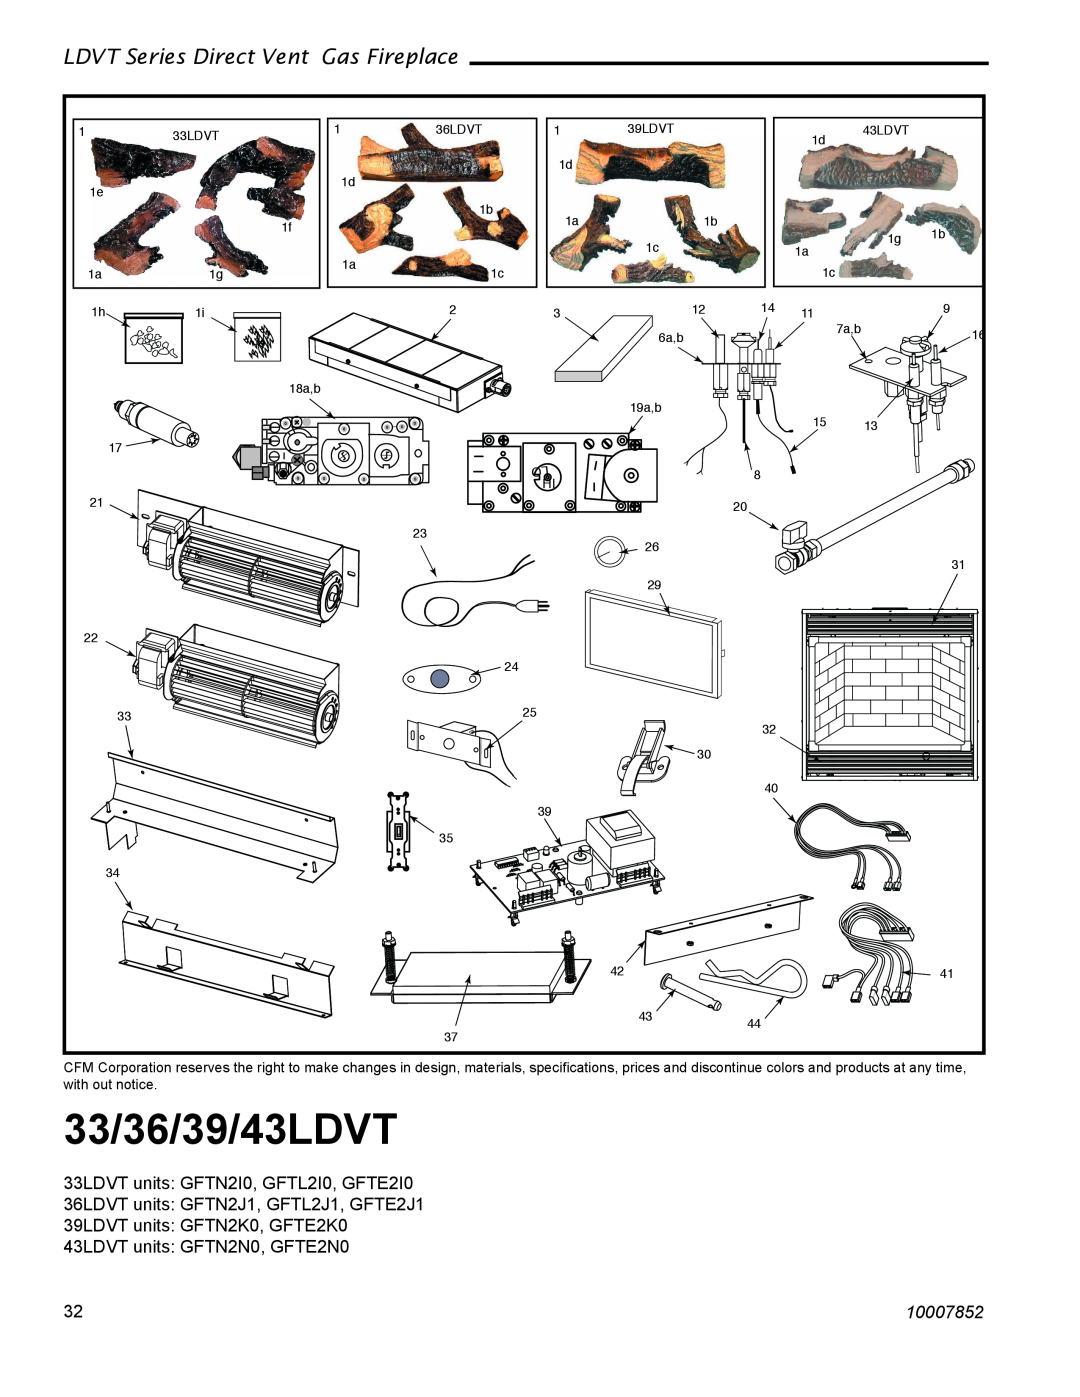 Vermont Casting manual 33/36/39/43LDVT, LDVT Series Direct Vent Gas Fireplace, 33LDVT units GFTN2I0, GFTL2I0, GFTE2I0 